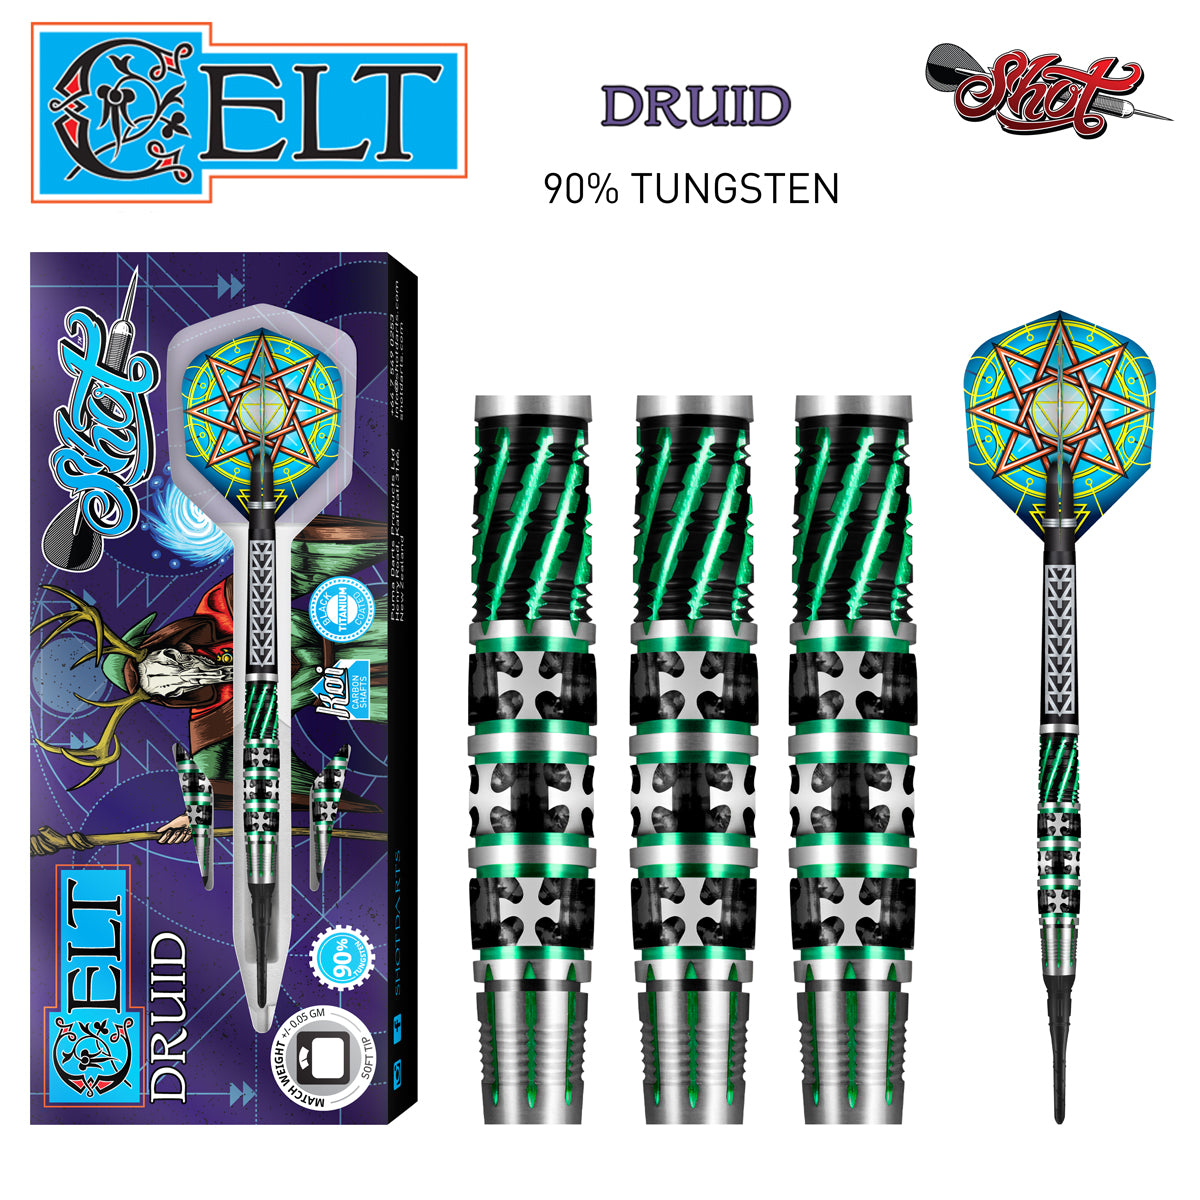 Celt Druid Soft Tip Dart Set-90% Tungsten